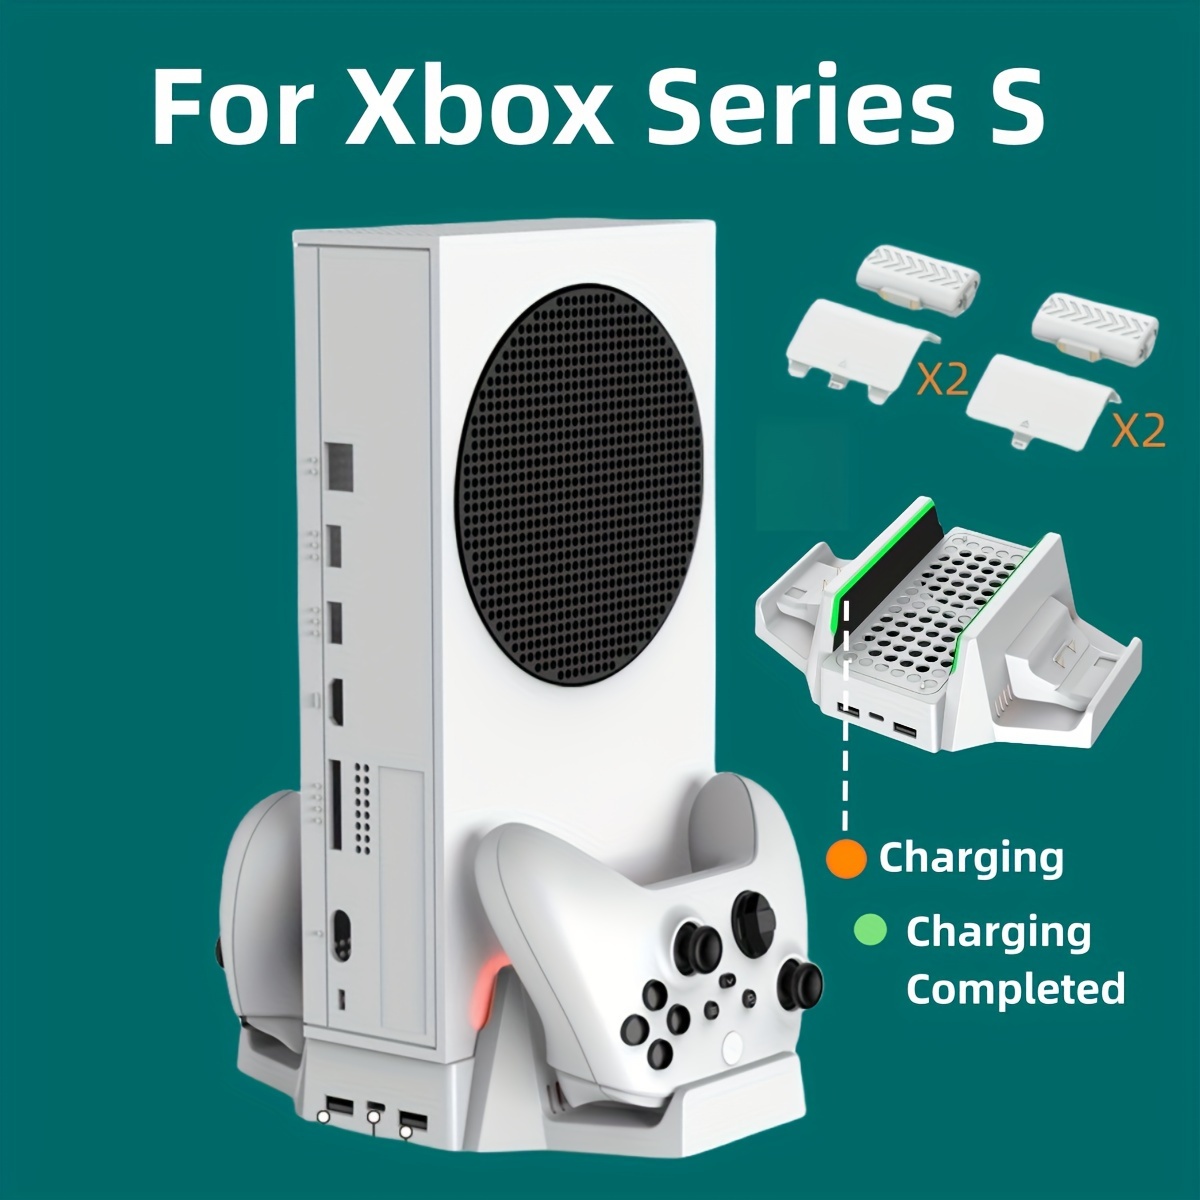 Ventilateur de refroidissement pour Xbox Series X avec lumière RVB et  crochets de casque, meilleur système de refroidissement de ventilateur  Accessoire anti-poussière pour Xbox Series X